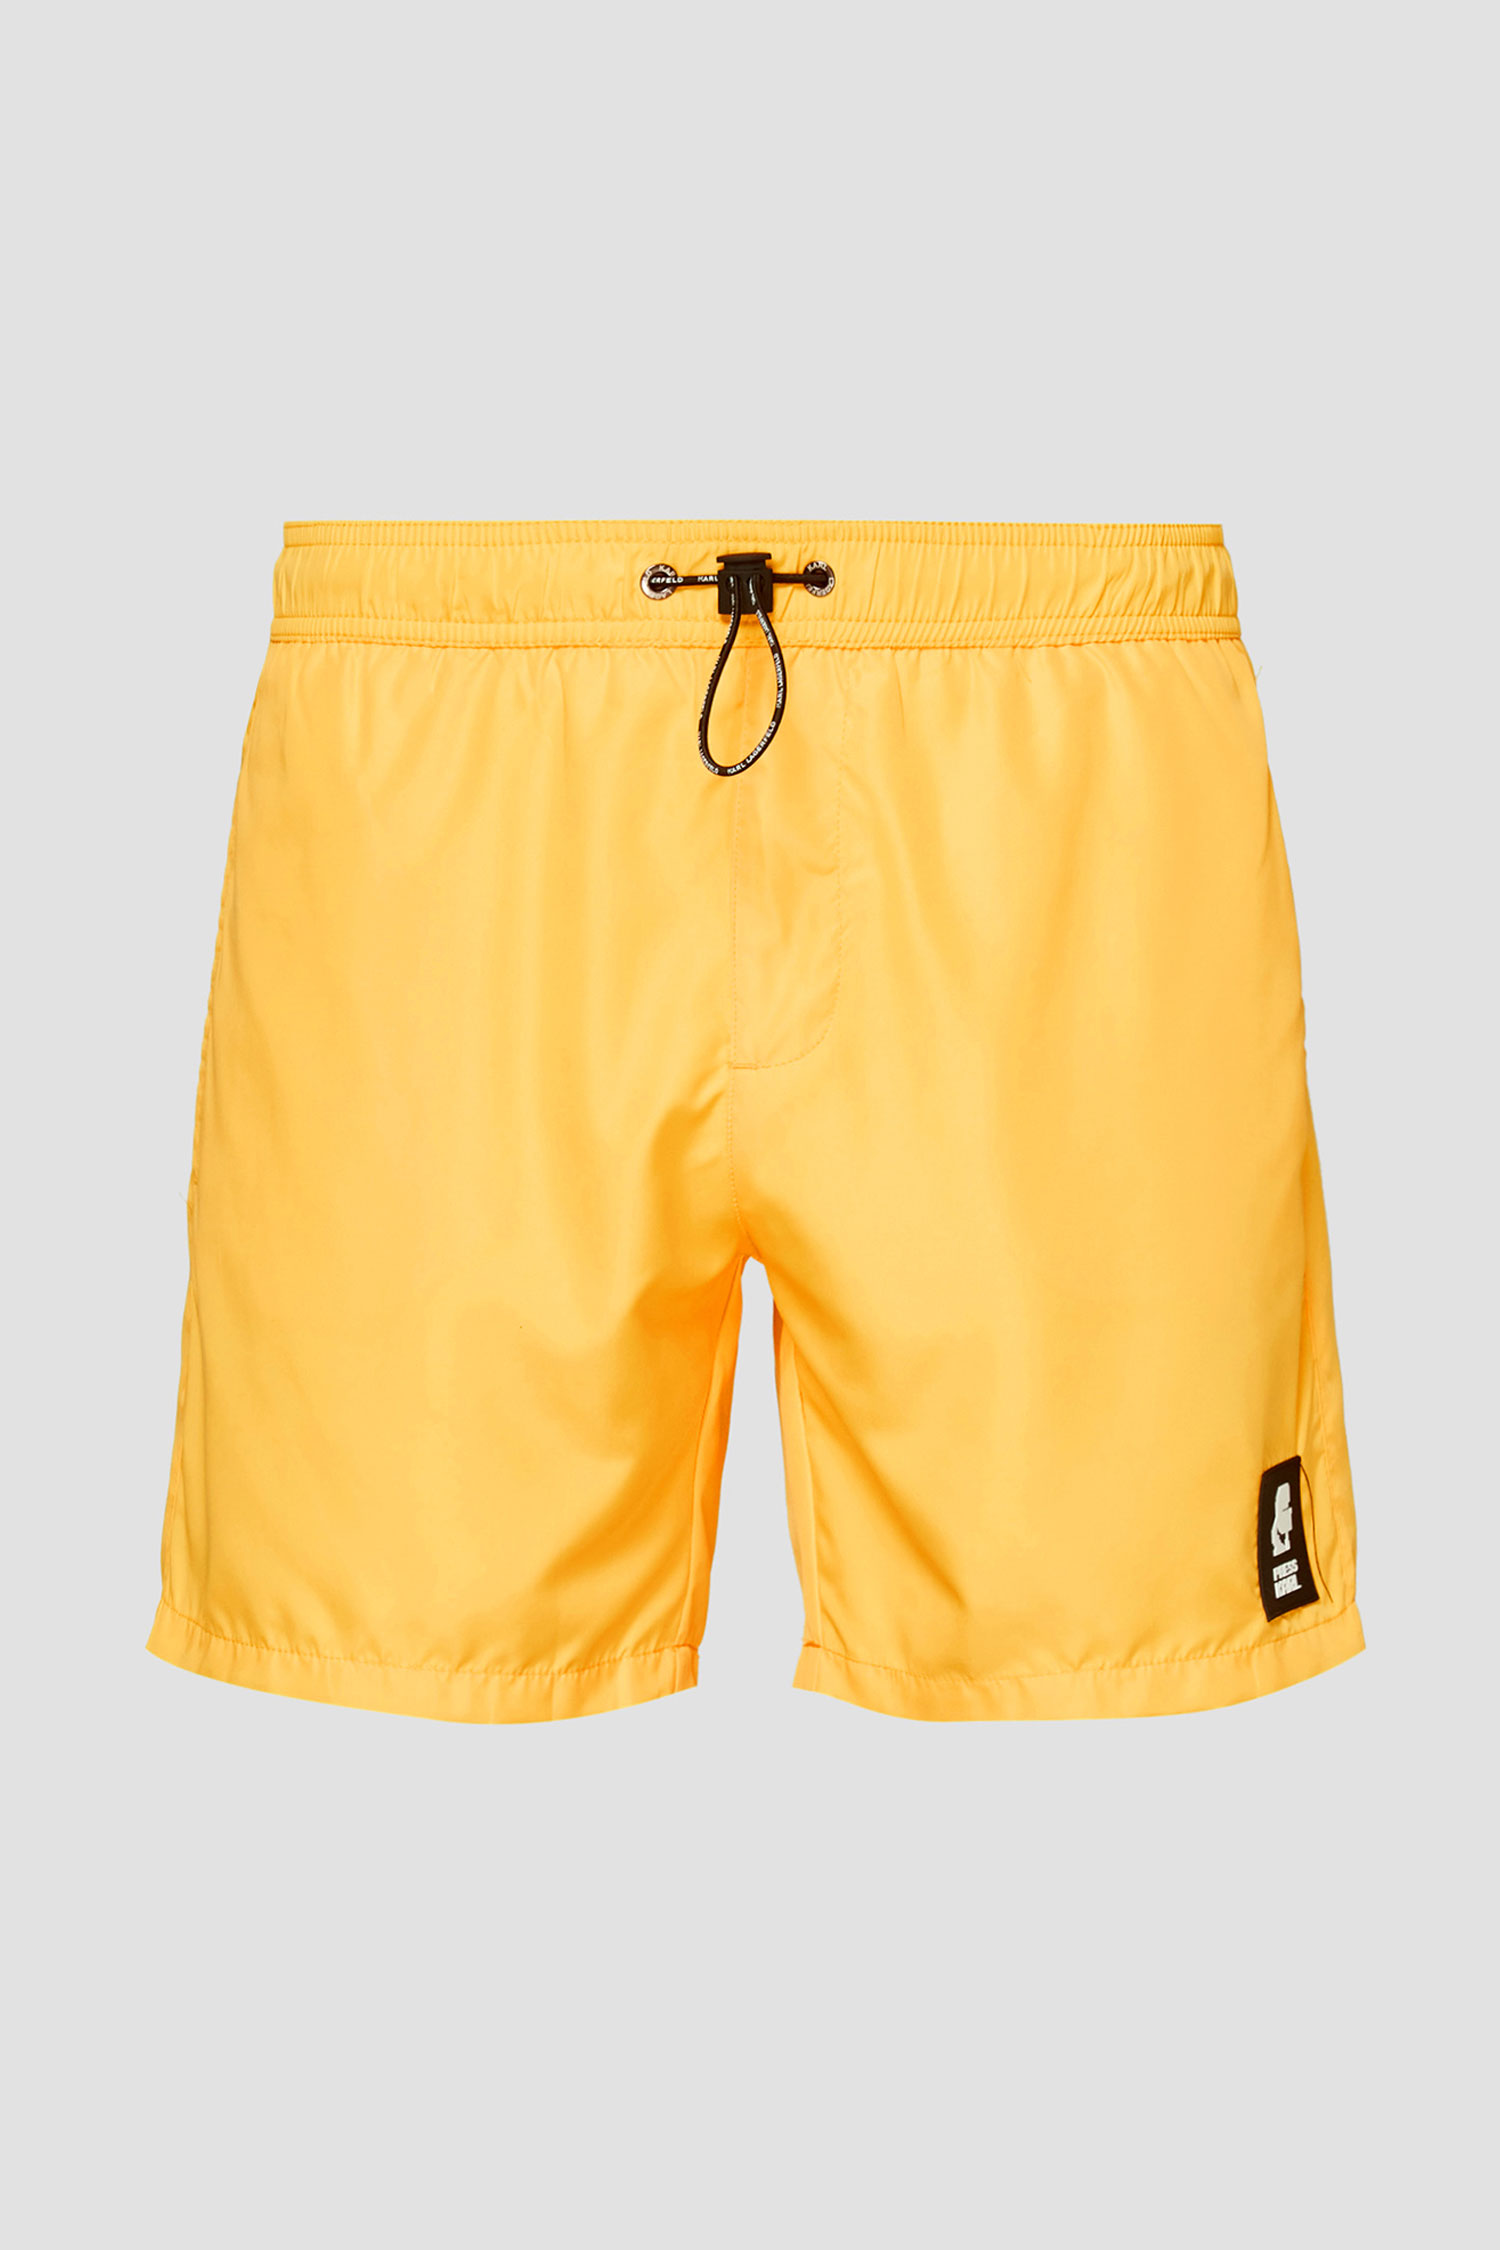 Чоловічі жовті плавальні шорти Karl Lagerfeld KL21MBM01;YELLOW